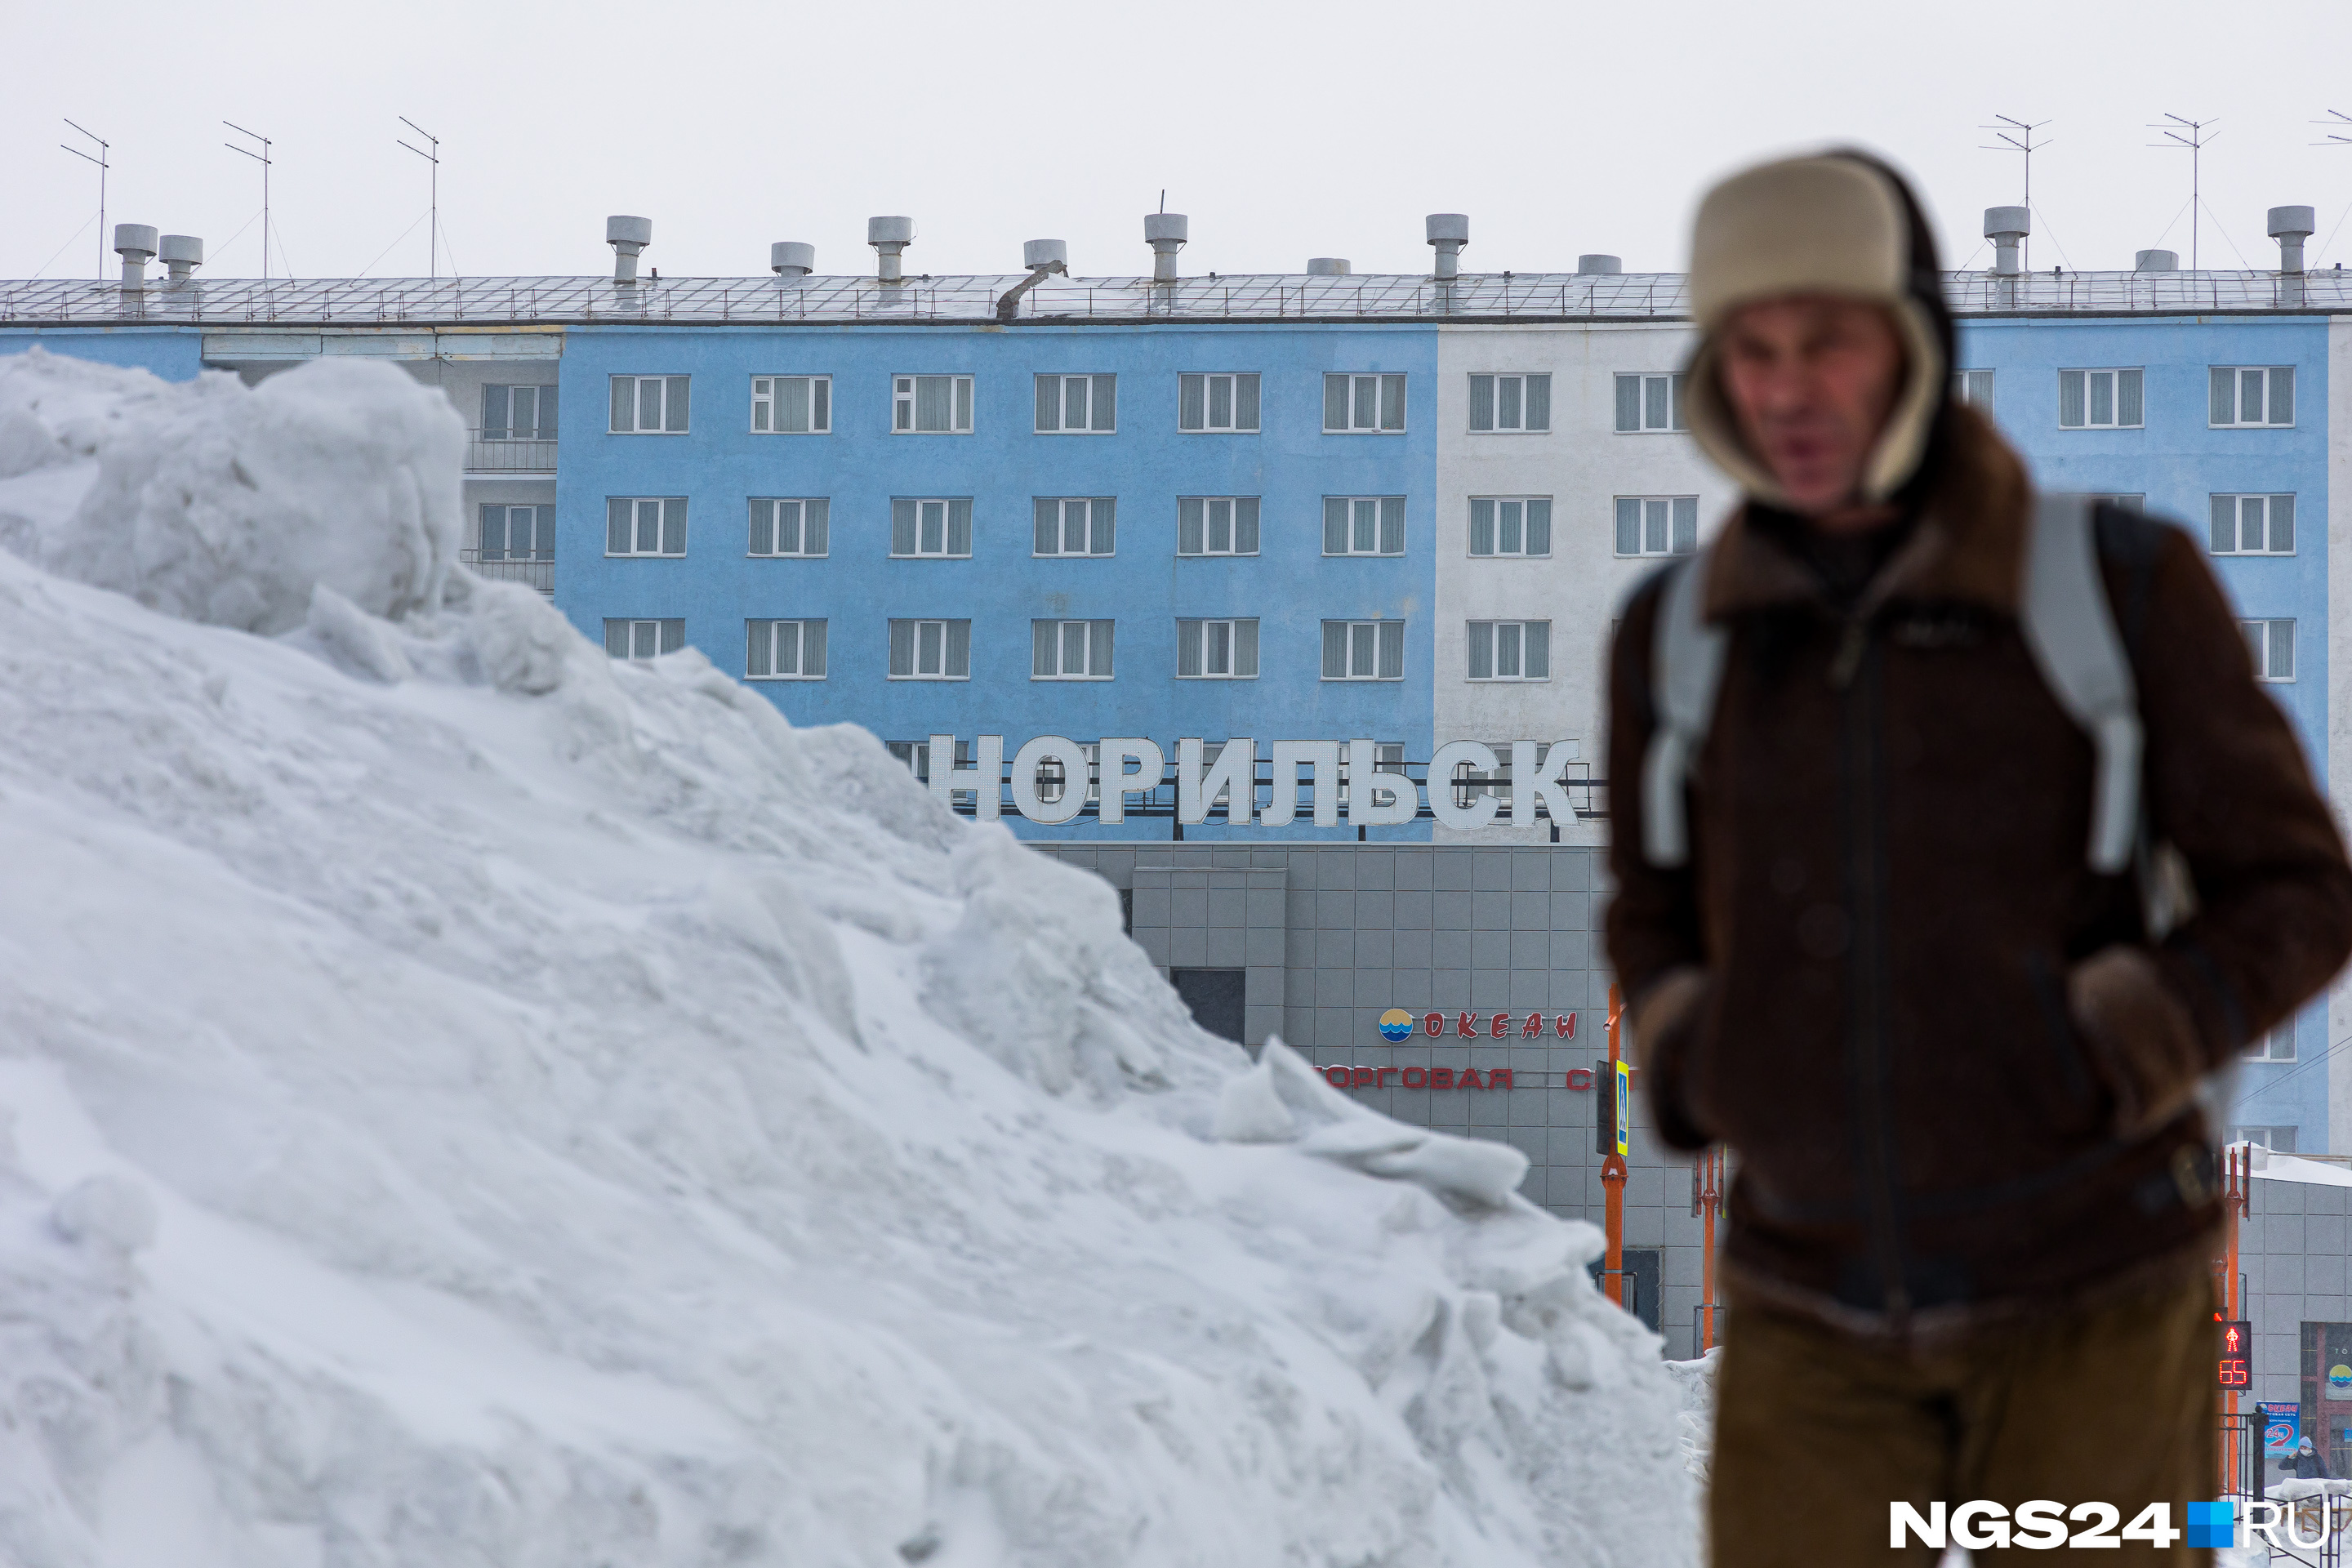 Зима в Норильске длится около <nobr class="_">9 месяцев</nobr> в году